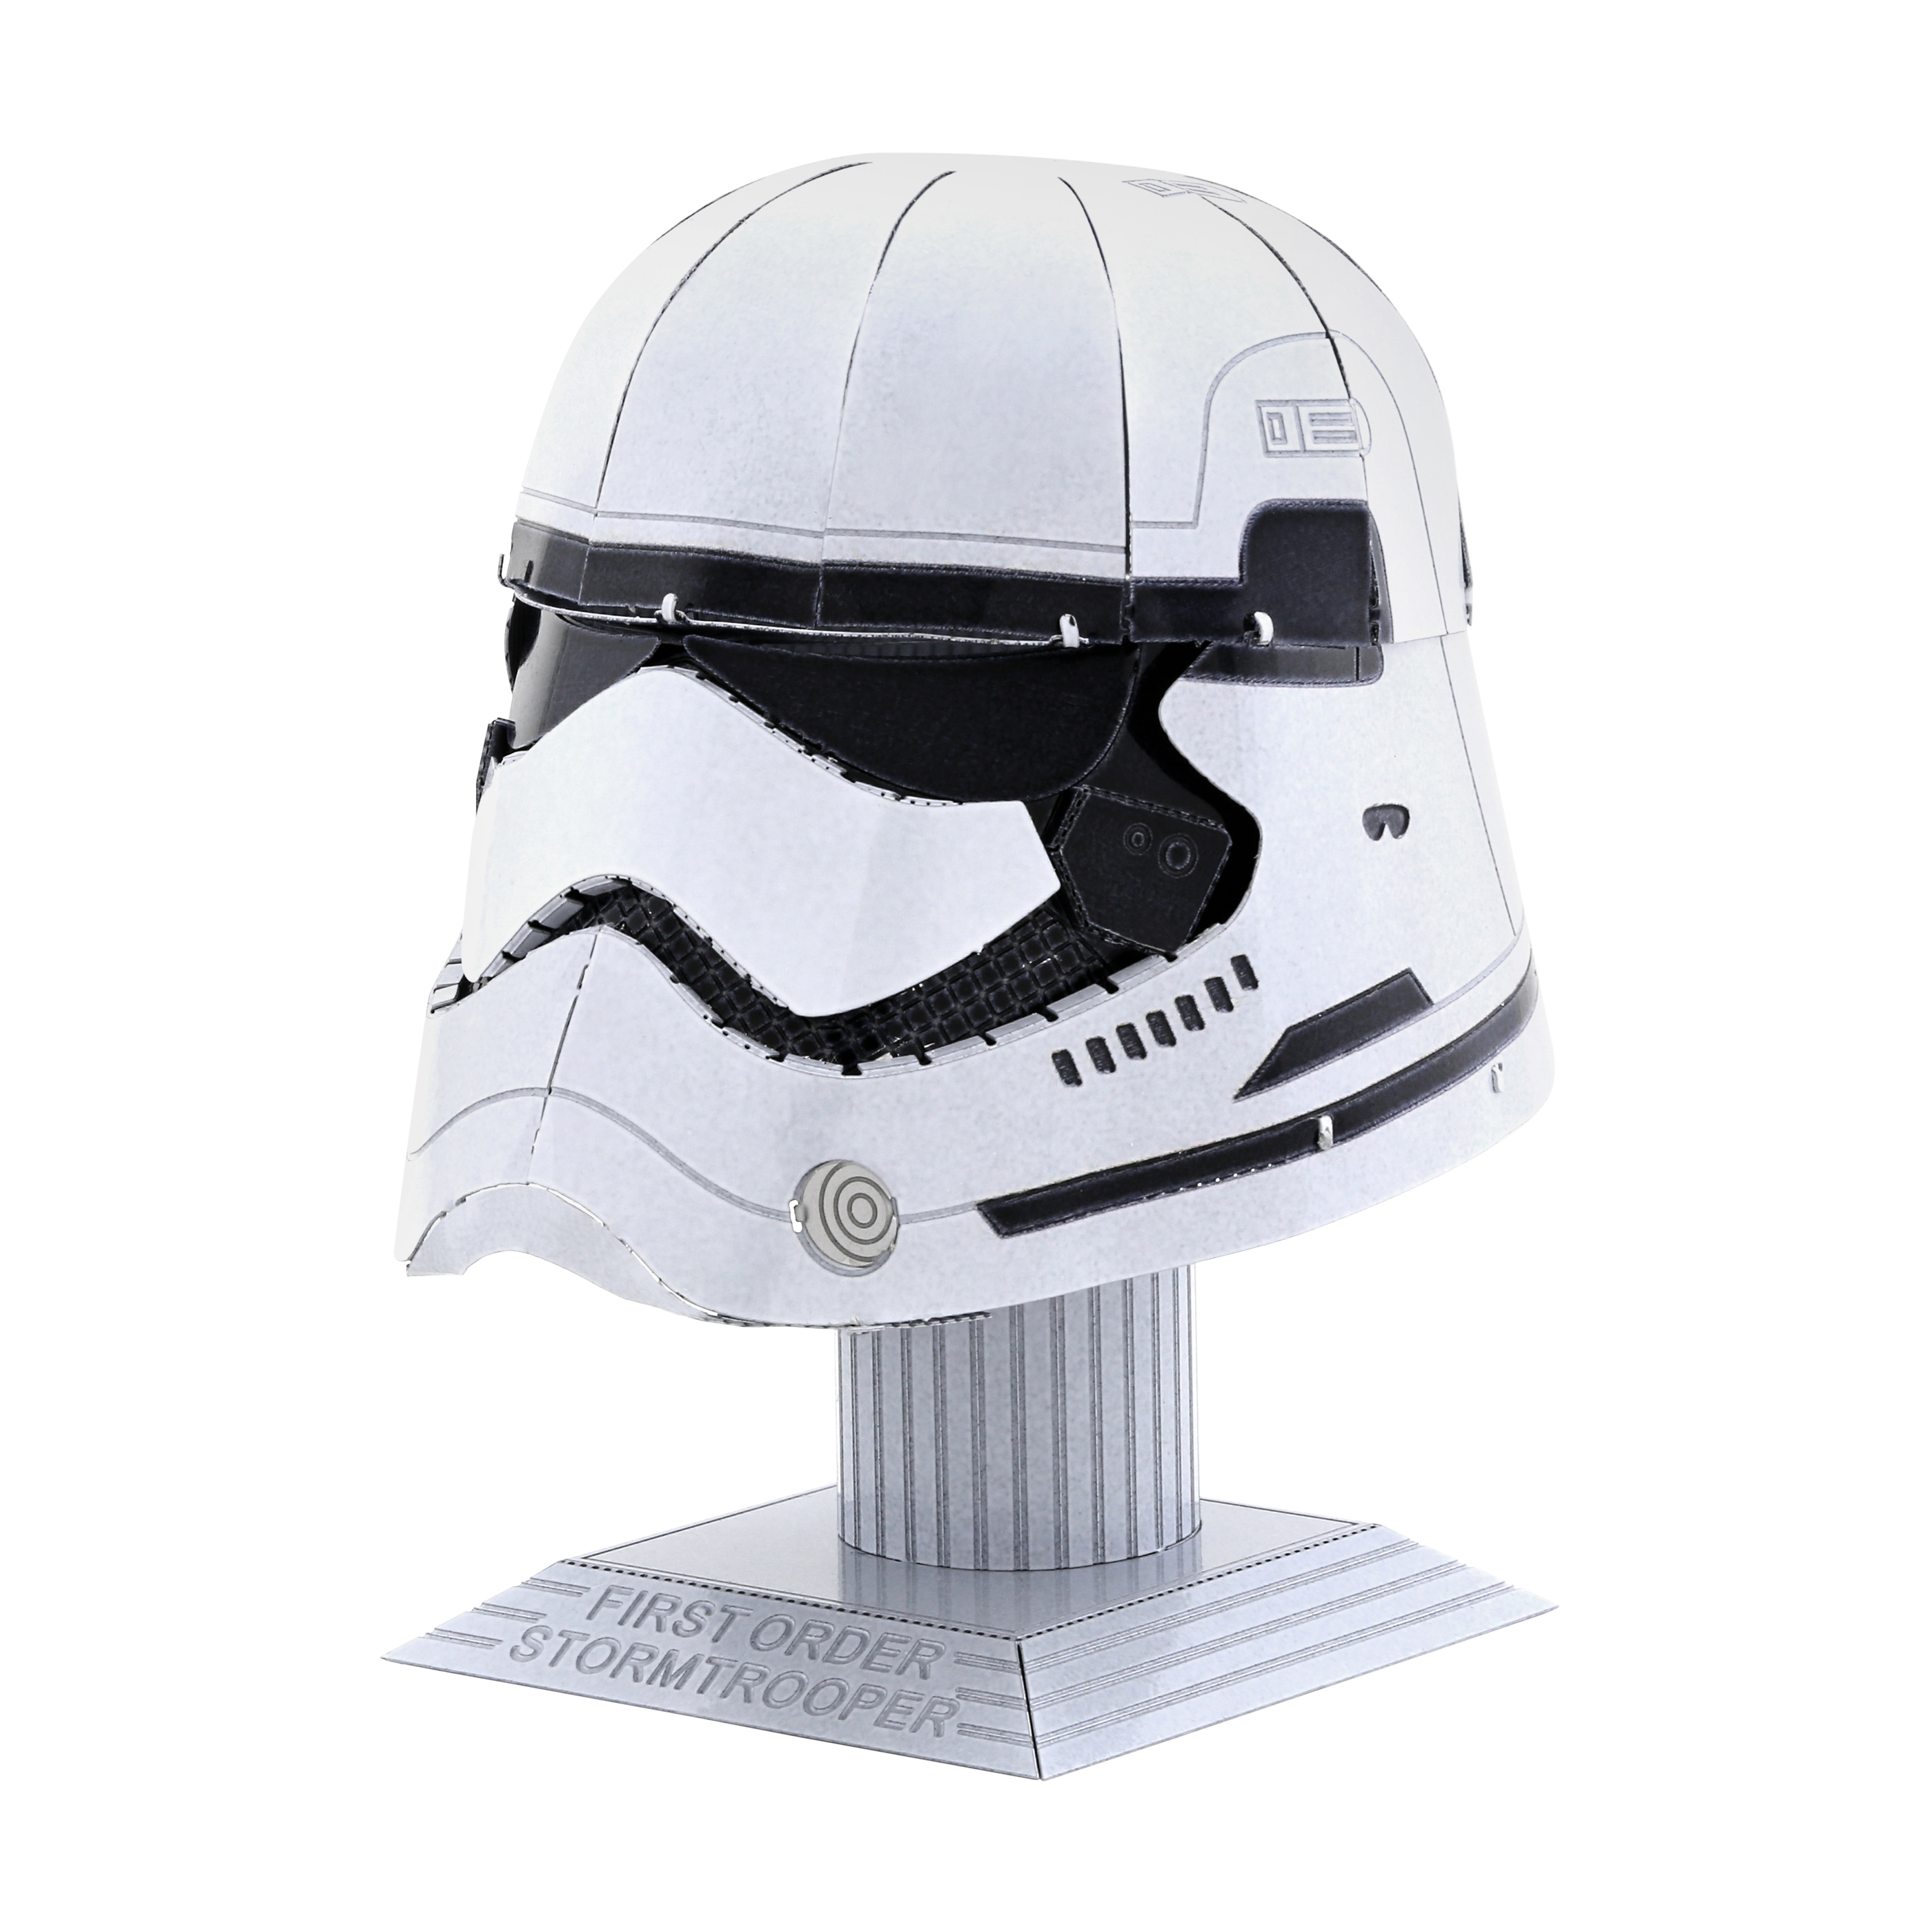 Fascinations Toys & Gifts Metal Earth 3D Metal Model Kit - Star Wars Stormtrooper Helmet